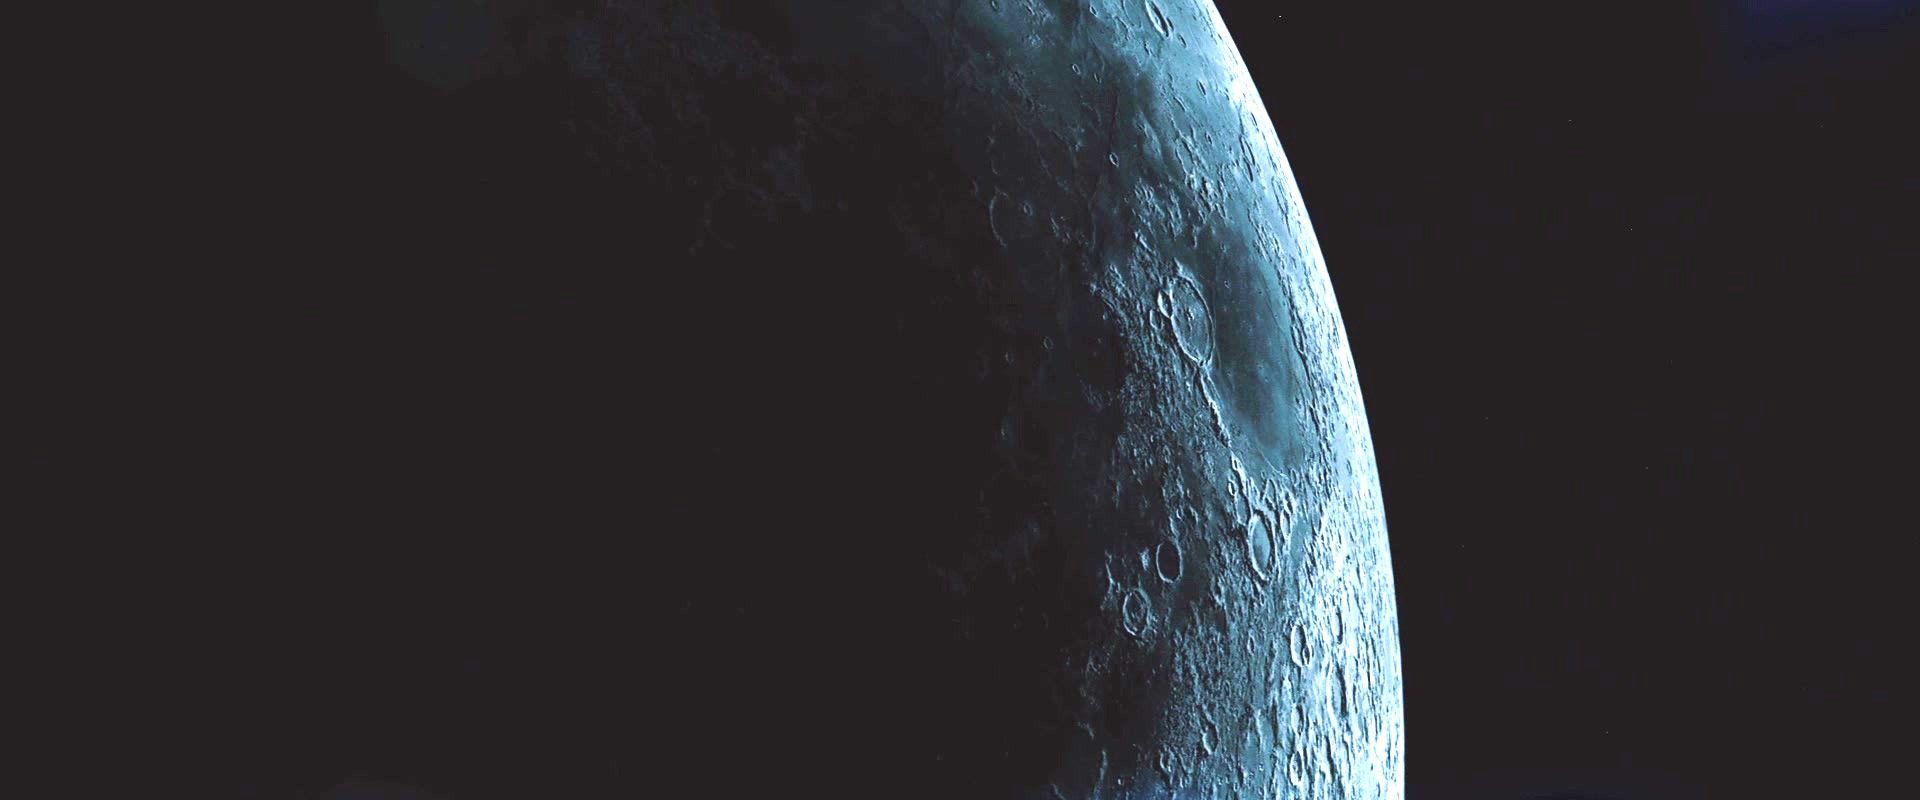 Трансформеры 3: Темная сторона Луны